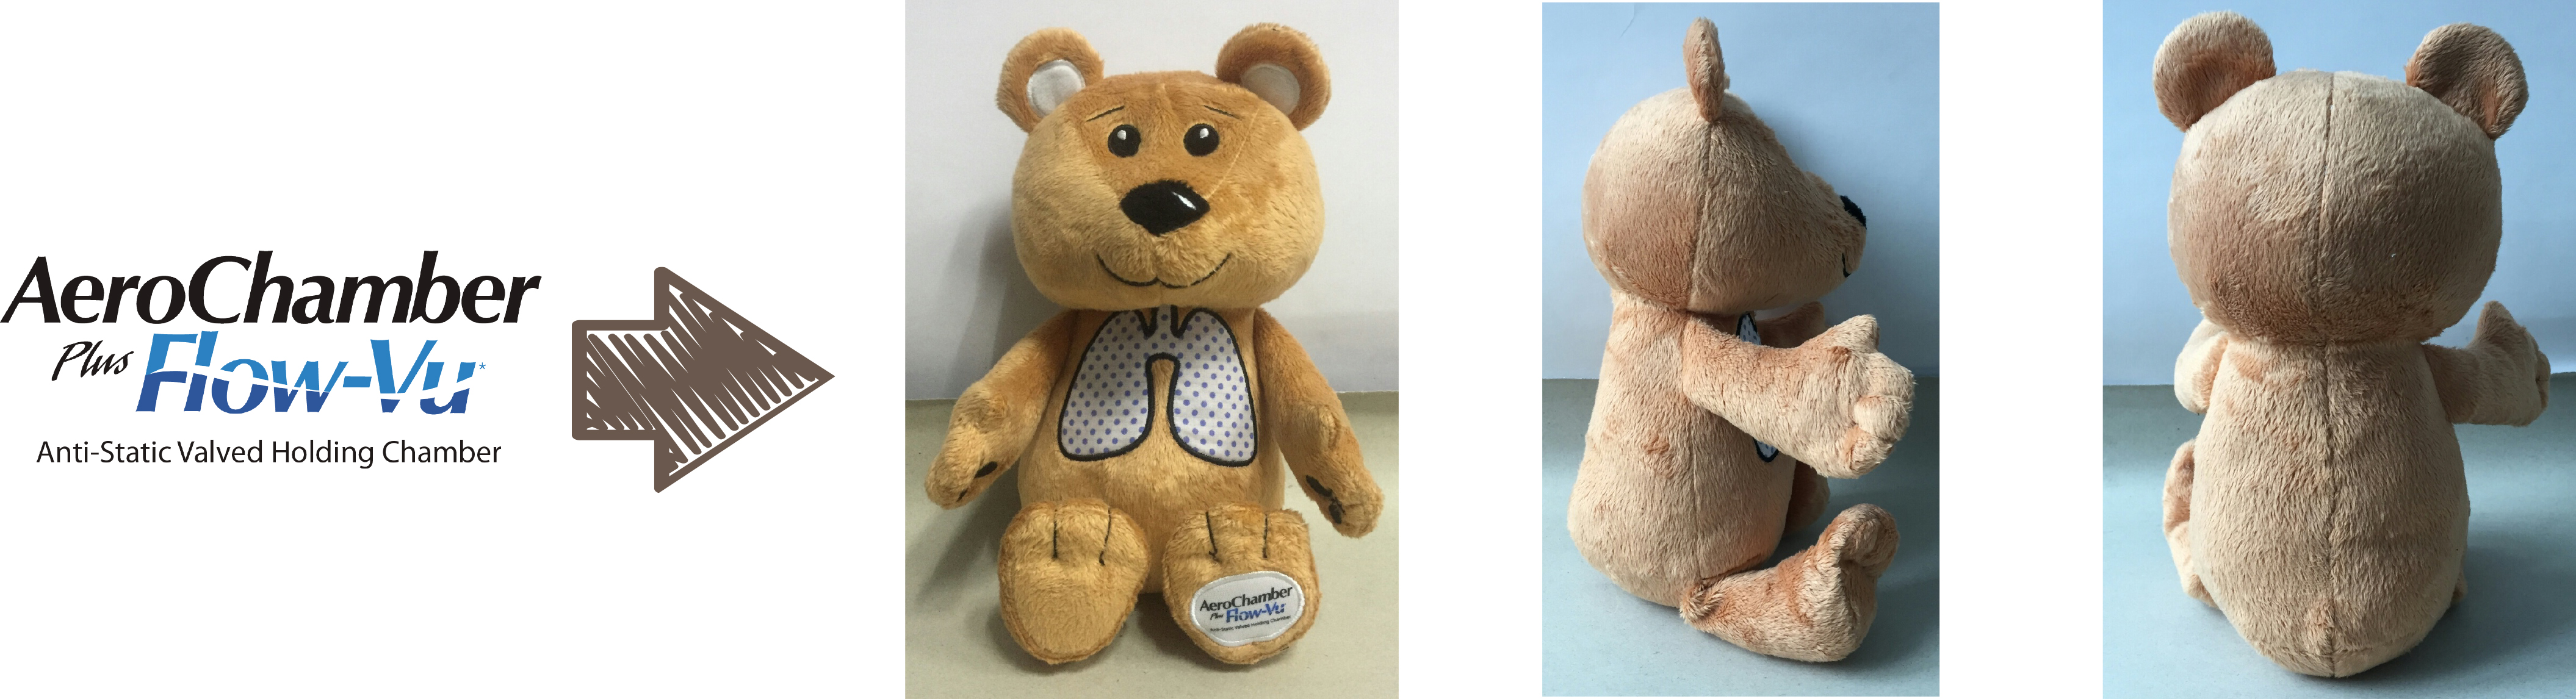 Trudell Medical International custom teddy bear